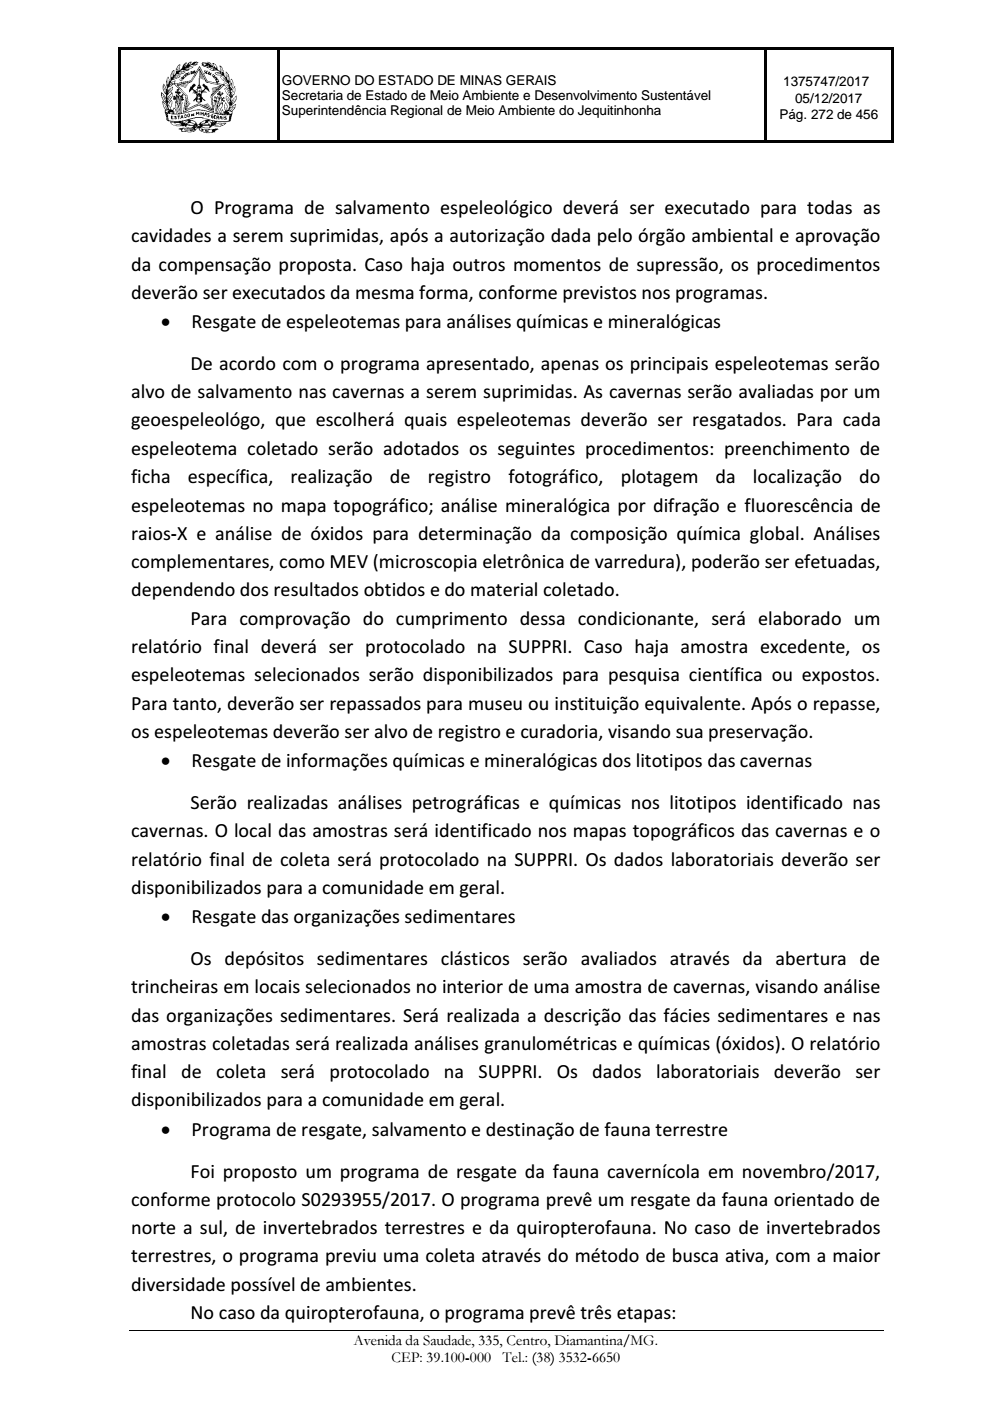 Page 272 from Parecer único da Secretaria de estado de Meio Ambiente e Desenvolvimento Sustentável (SEMAD)